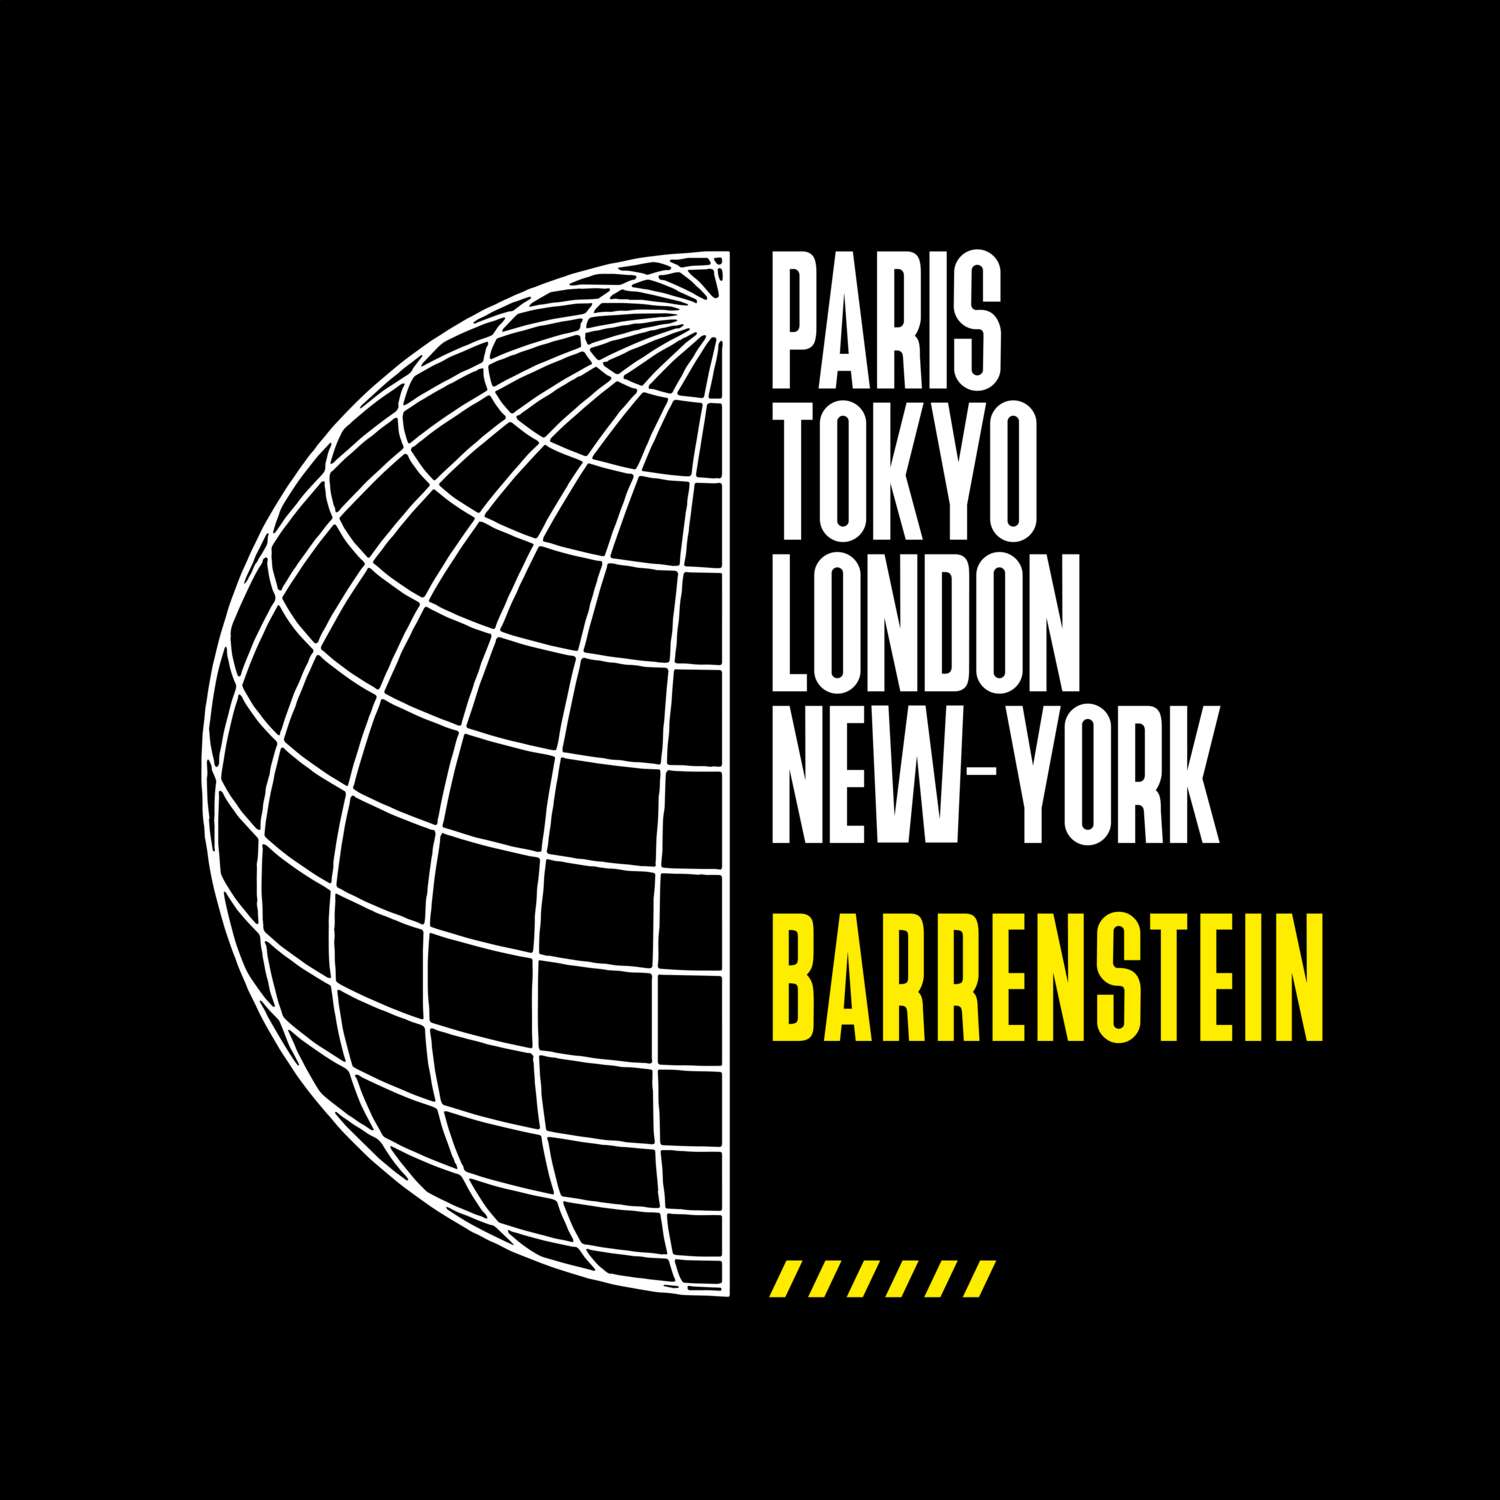 Barrenstein T-Shirt »Paris Tokyo London«